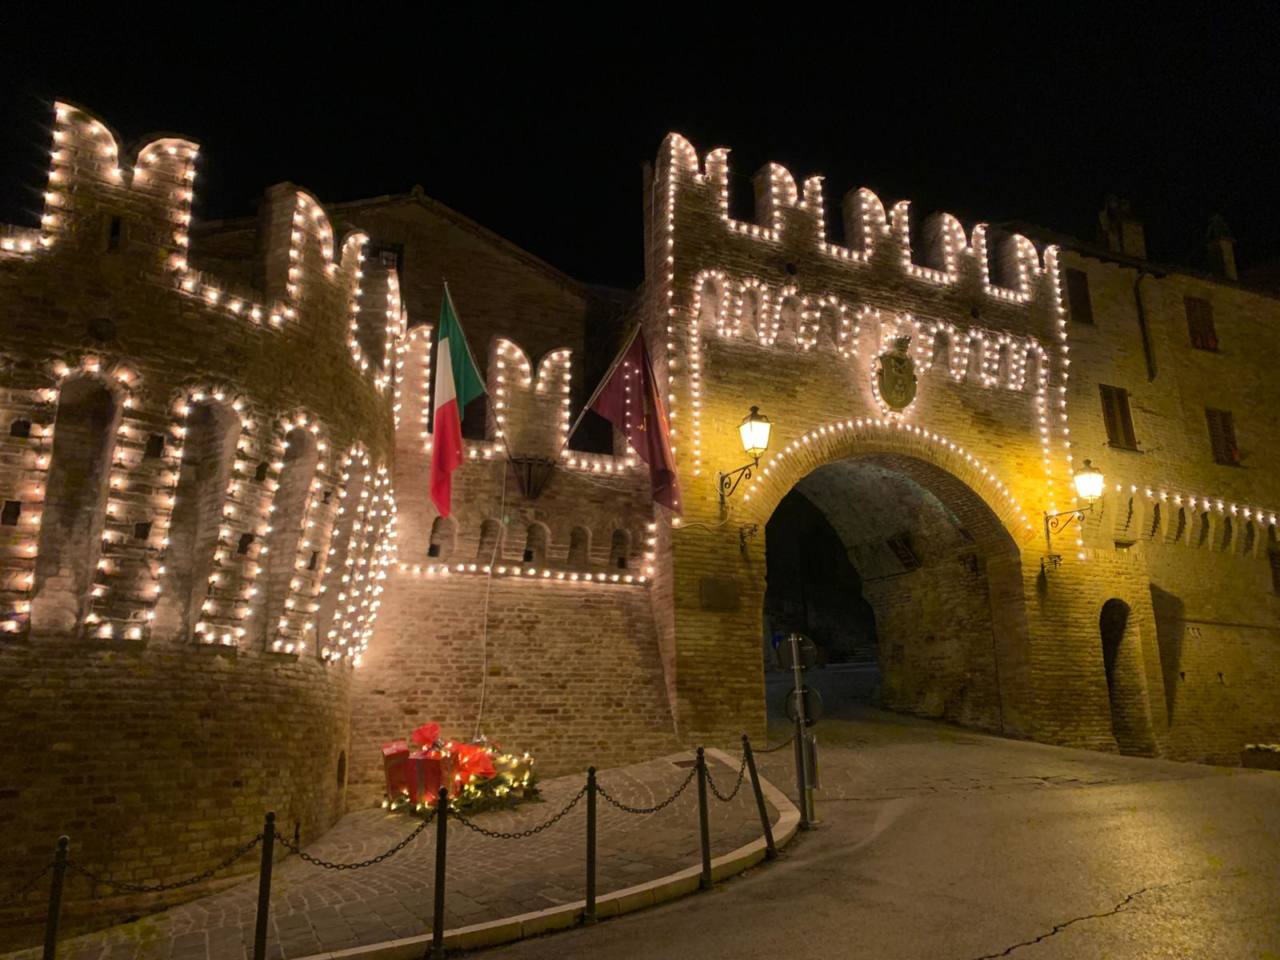 Le mura di Corinaldo addobbate per le festività di natale con le luci